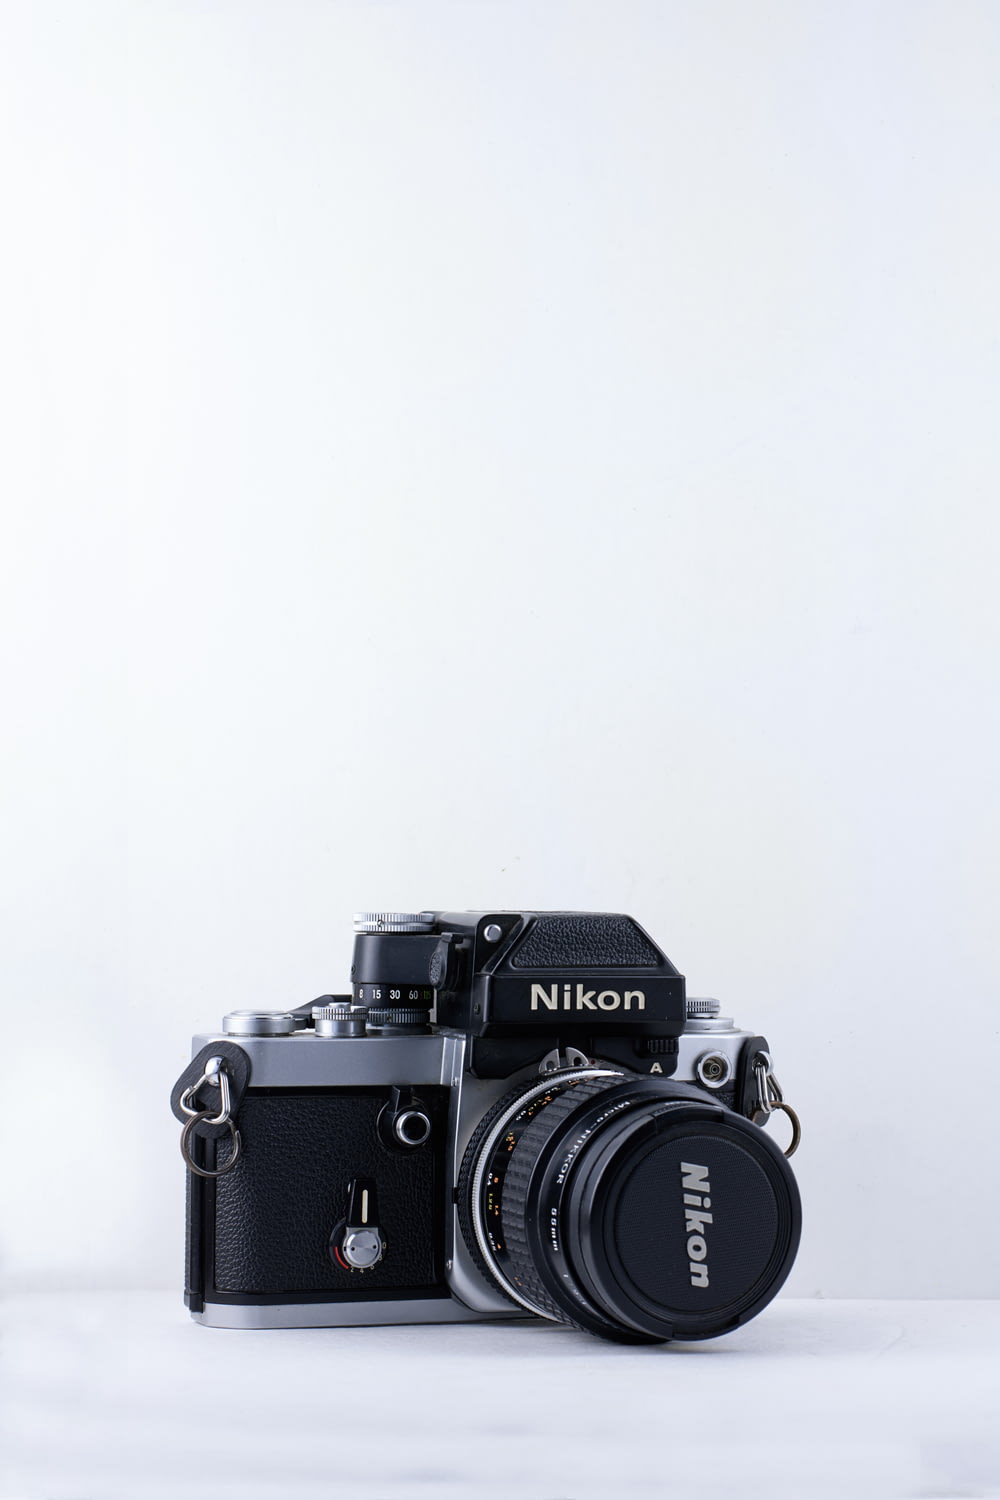 schwarze Nikon-Kamera vor weißem Hintergrund